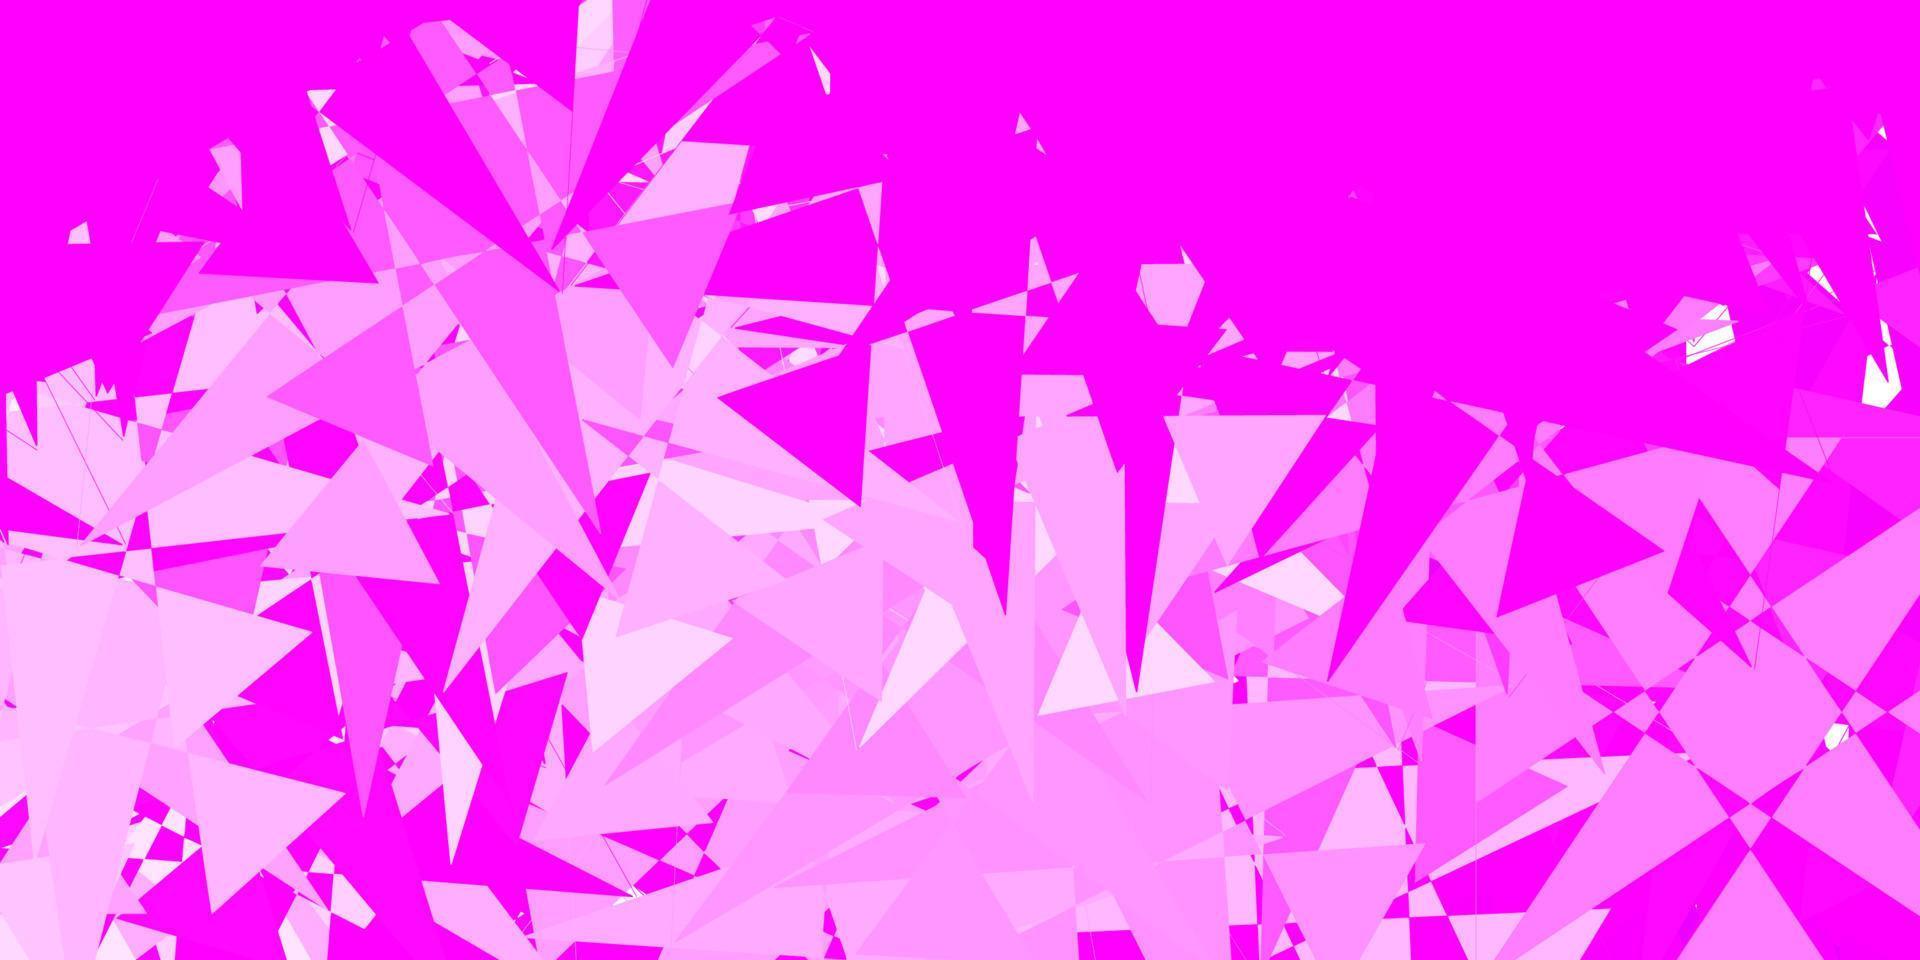 hellpurpurner, rosa Vektorhintergrund mit zufälligen Formen. vektor